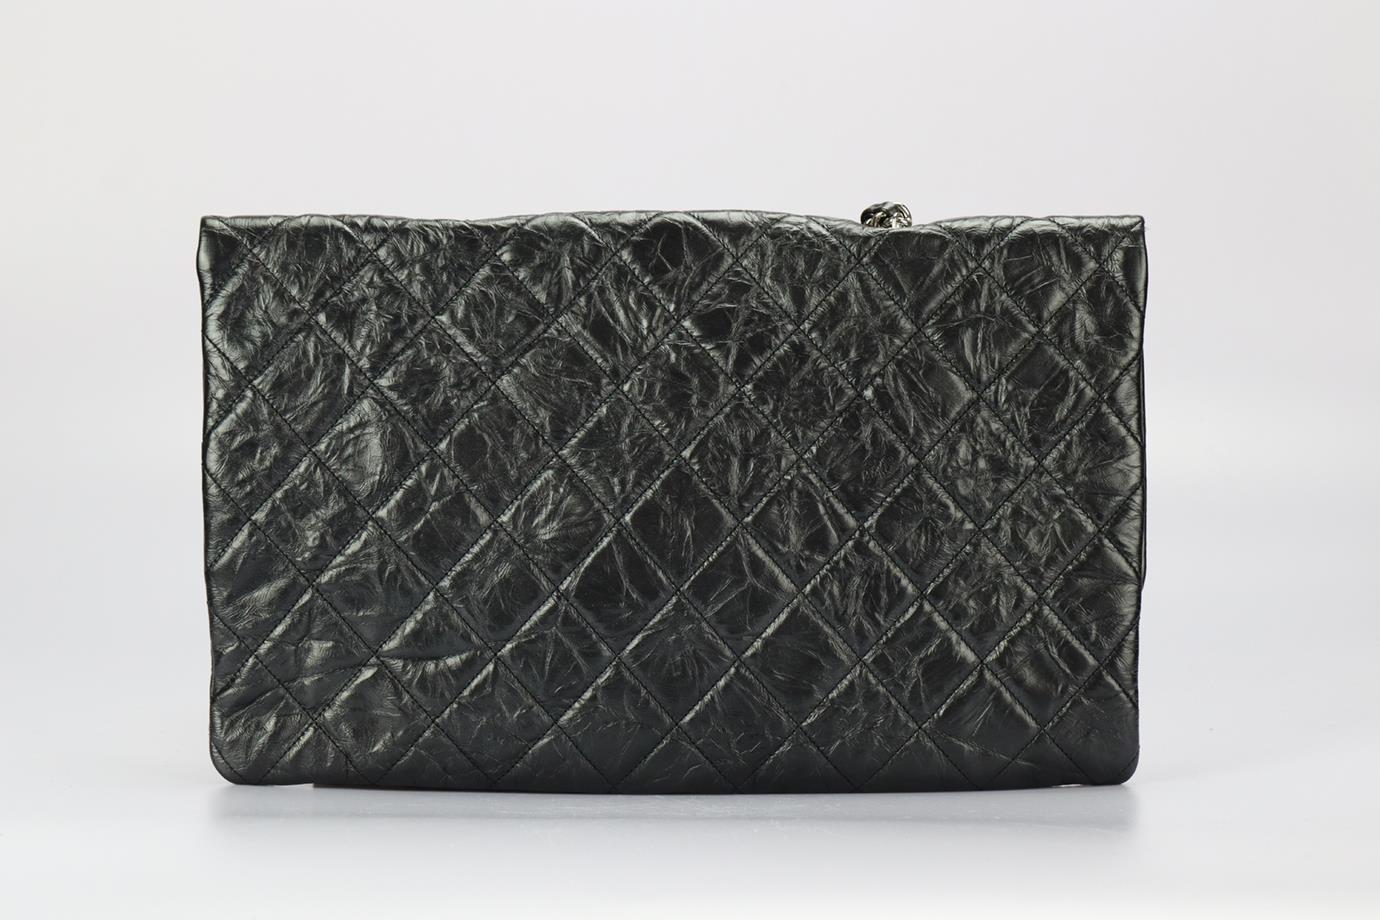 Black Chanel 2017 Bing Bang Flap Quilted Leather Shoulder Bag For Sale